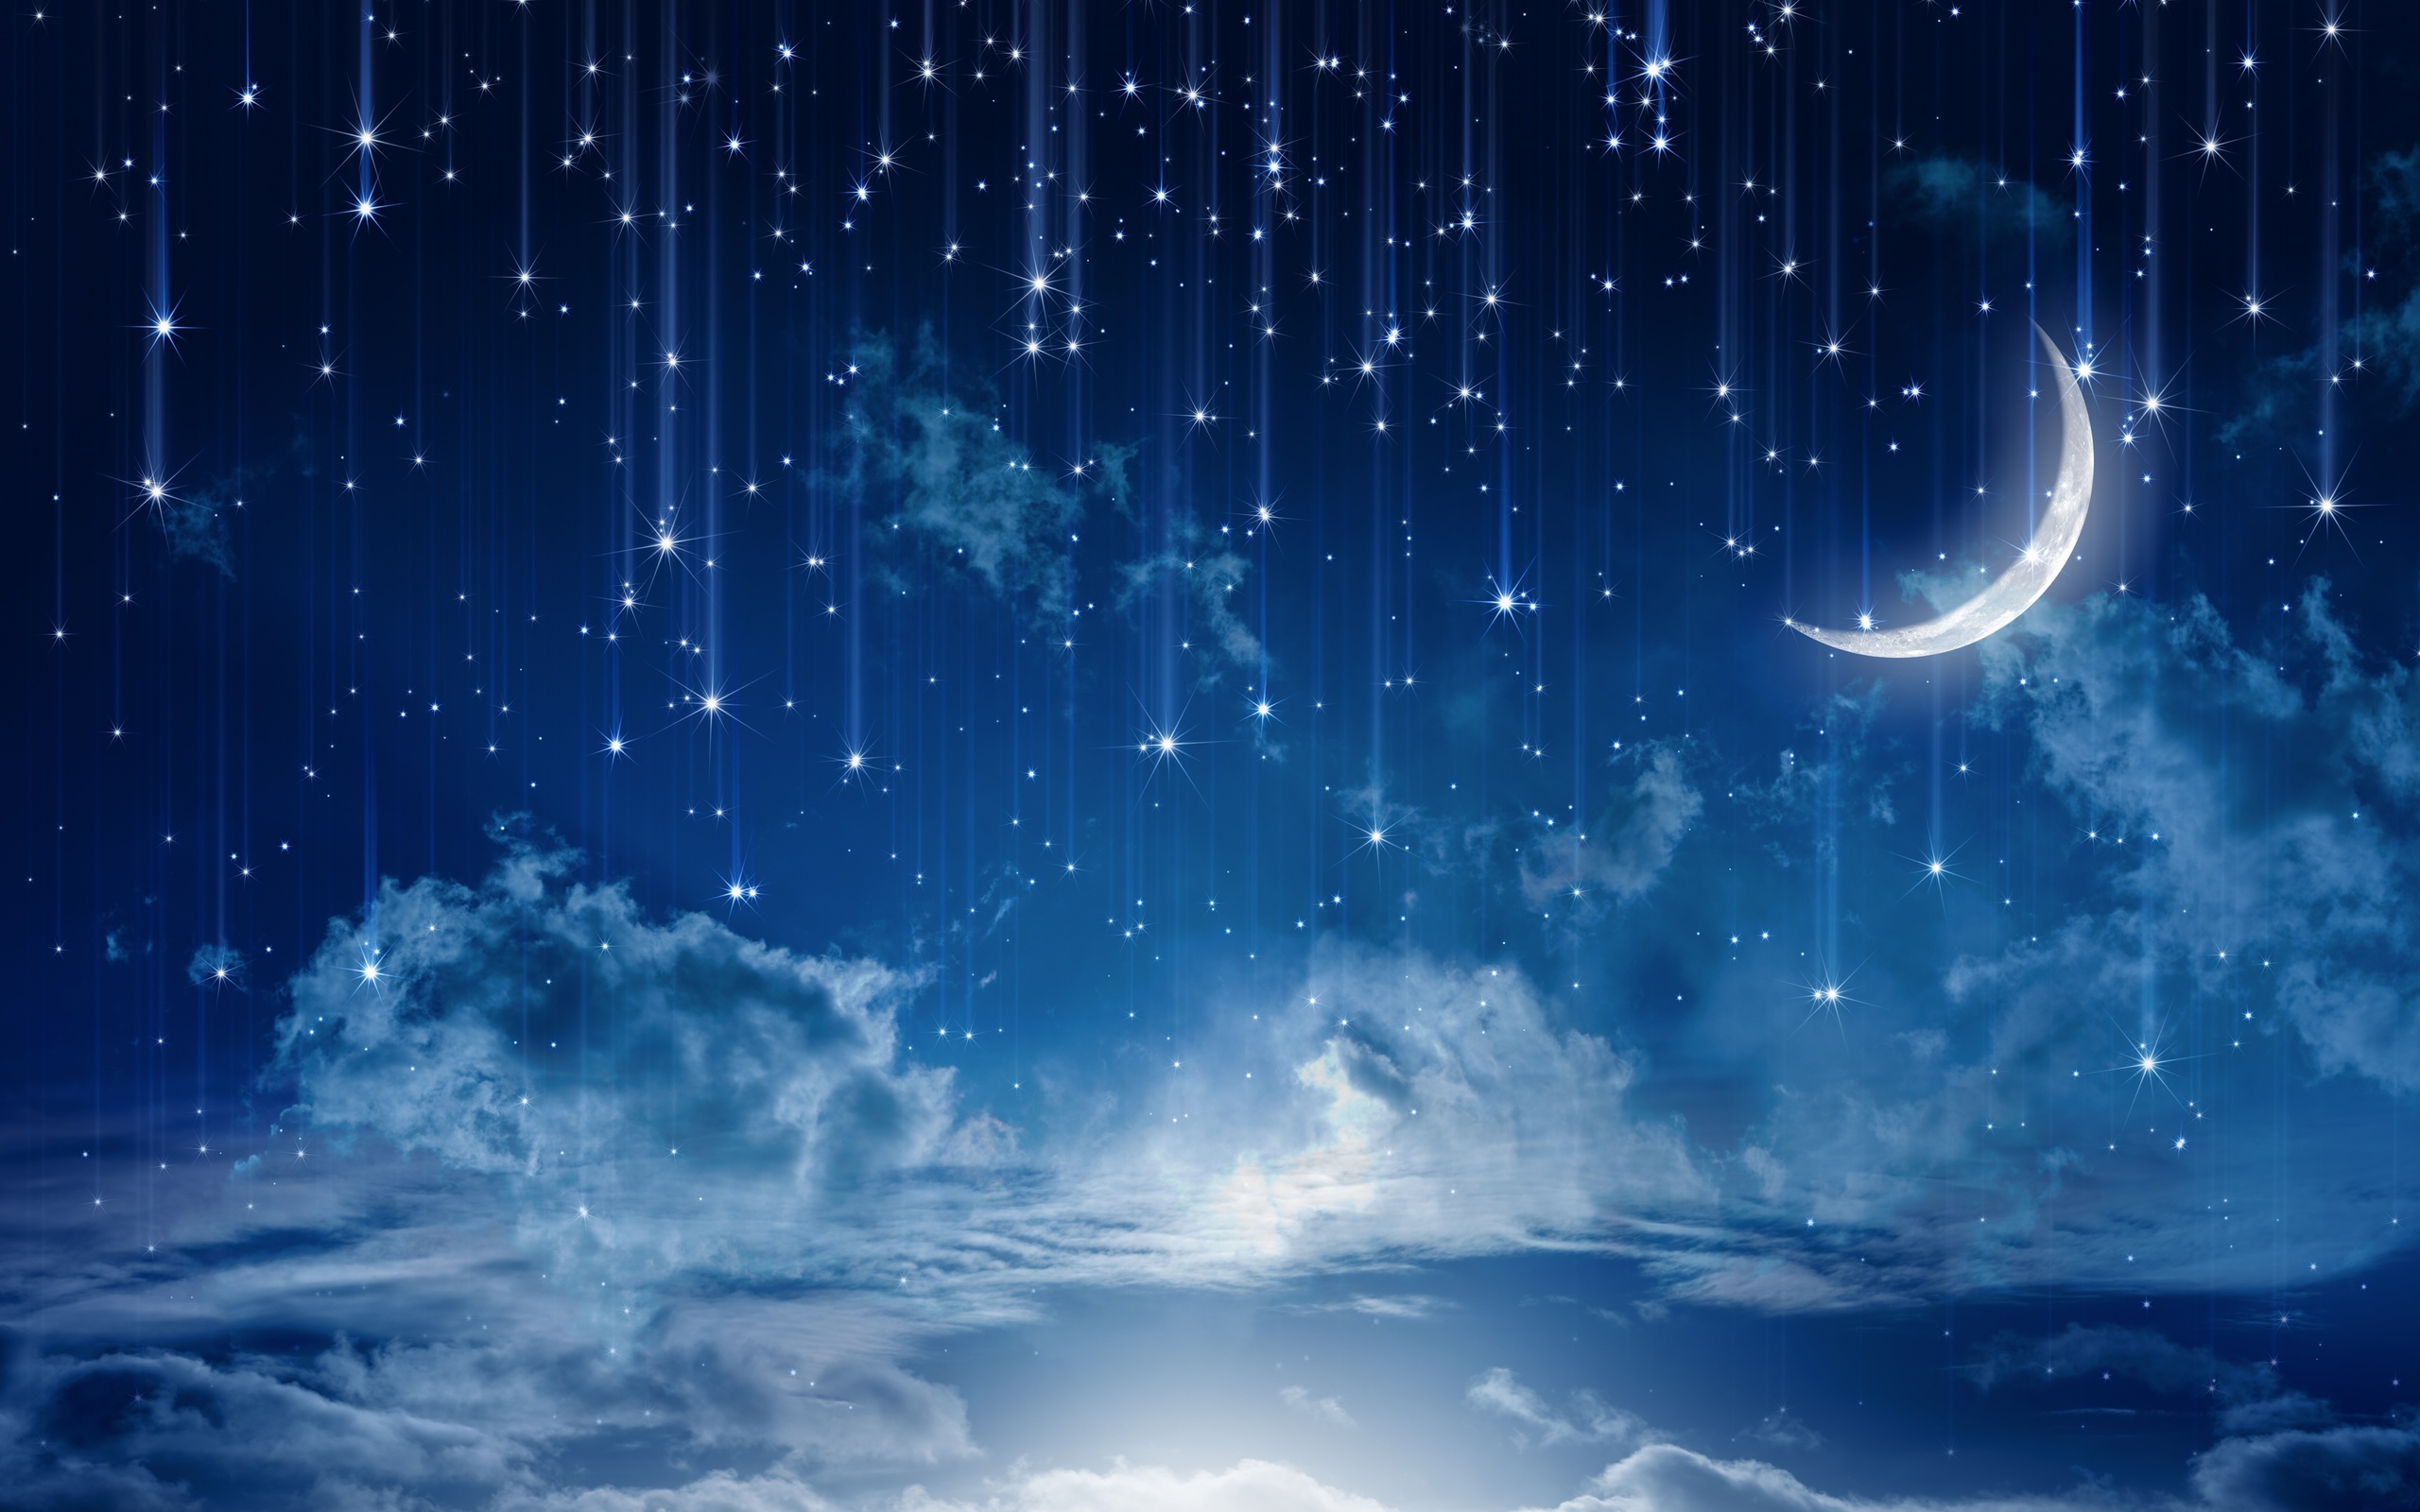 Bầu trời trong đêm đầy ngọn sao luôn lôi cuốn và kỳ bí. Hãy cùng ngắm nhìn Sky moonlight, nơi bạn có thể tận hưởng những khoảnh khắc thăng hoa, đắm chìm trong cảm giác yên bình và lãng mạn.